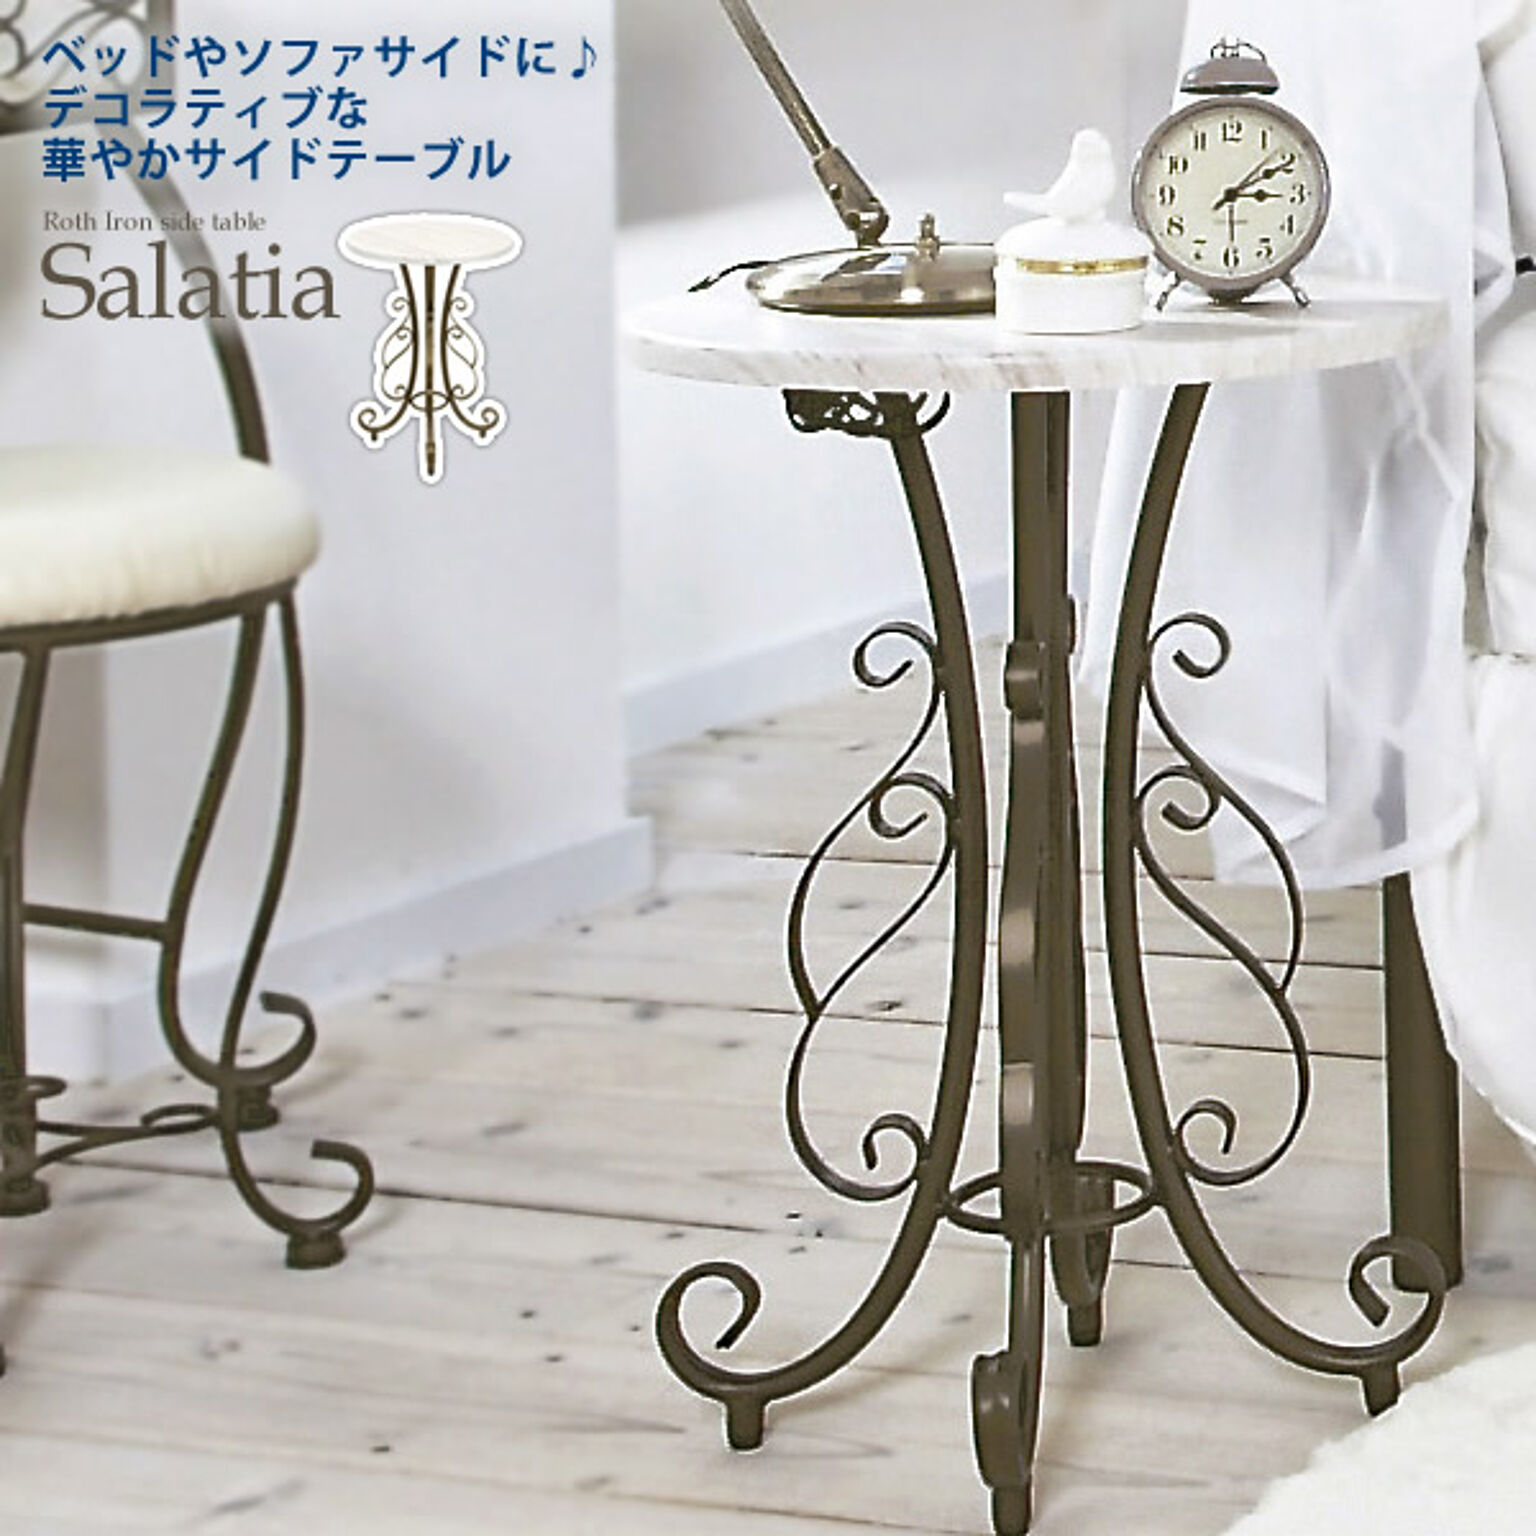 サイドテーブル カフェテーブル 円形【salatia】 ホワイト(white) (ロマンティック) ヨーロピアン 姫系 クラシック ロートアイアン 